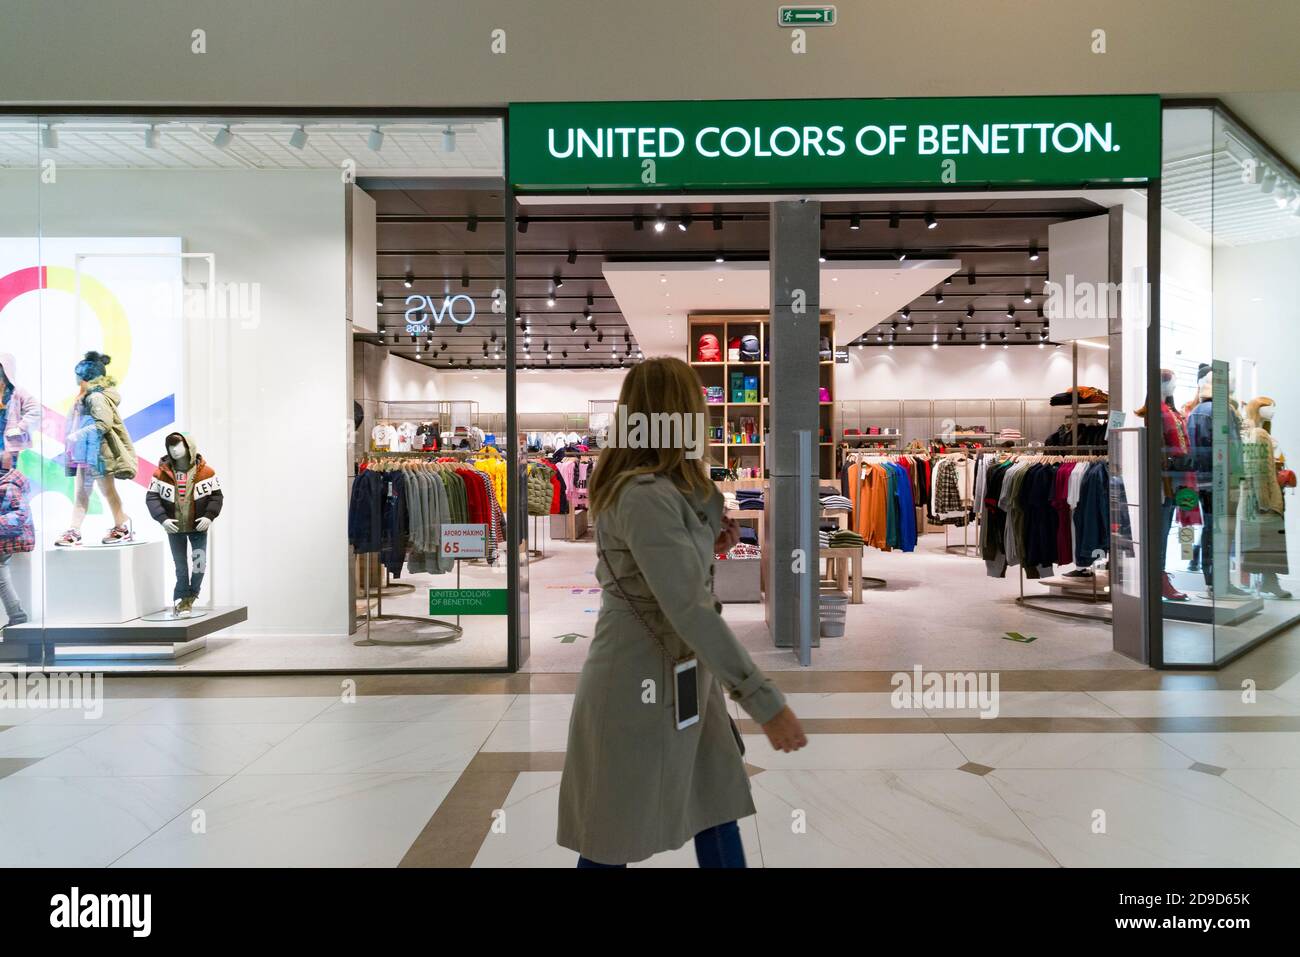 Una mujer caminando frente a la tienda de los colores Unidos de Benetton  durante el estado de alarma en el centro comercial Osito la Eliana  Fotografía de stock - Alamy